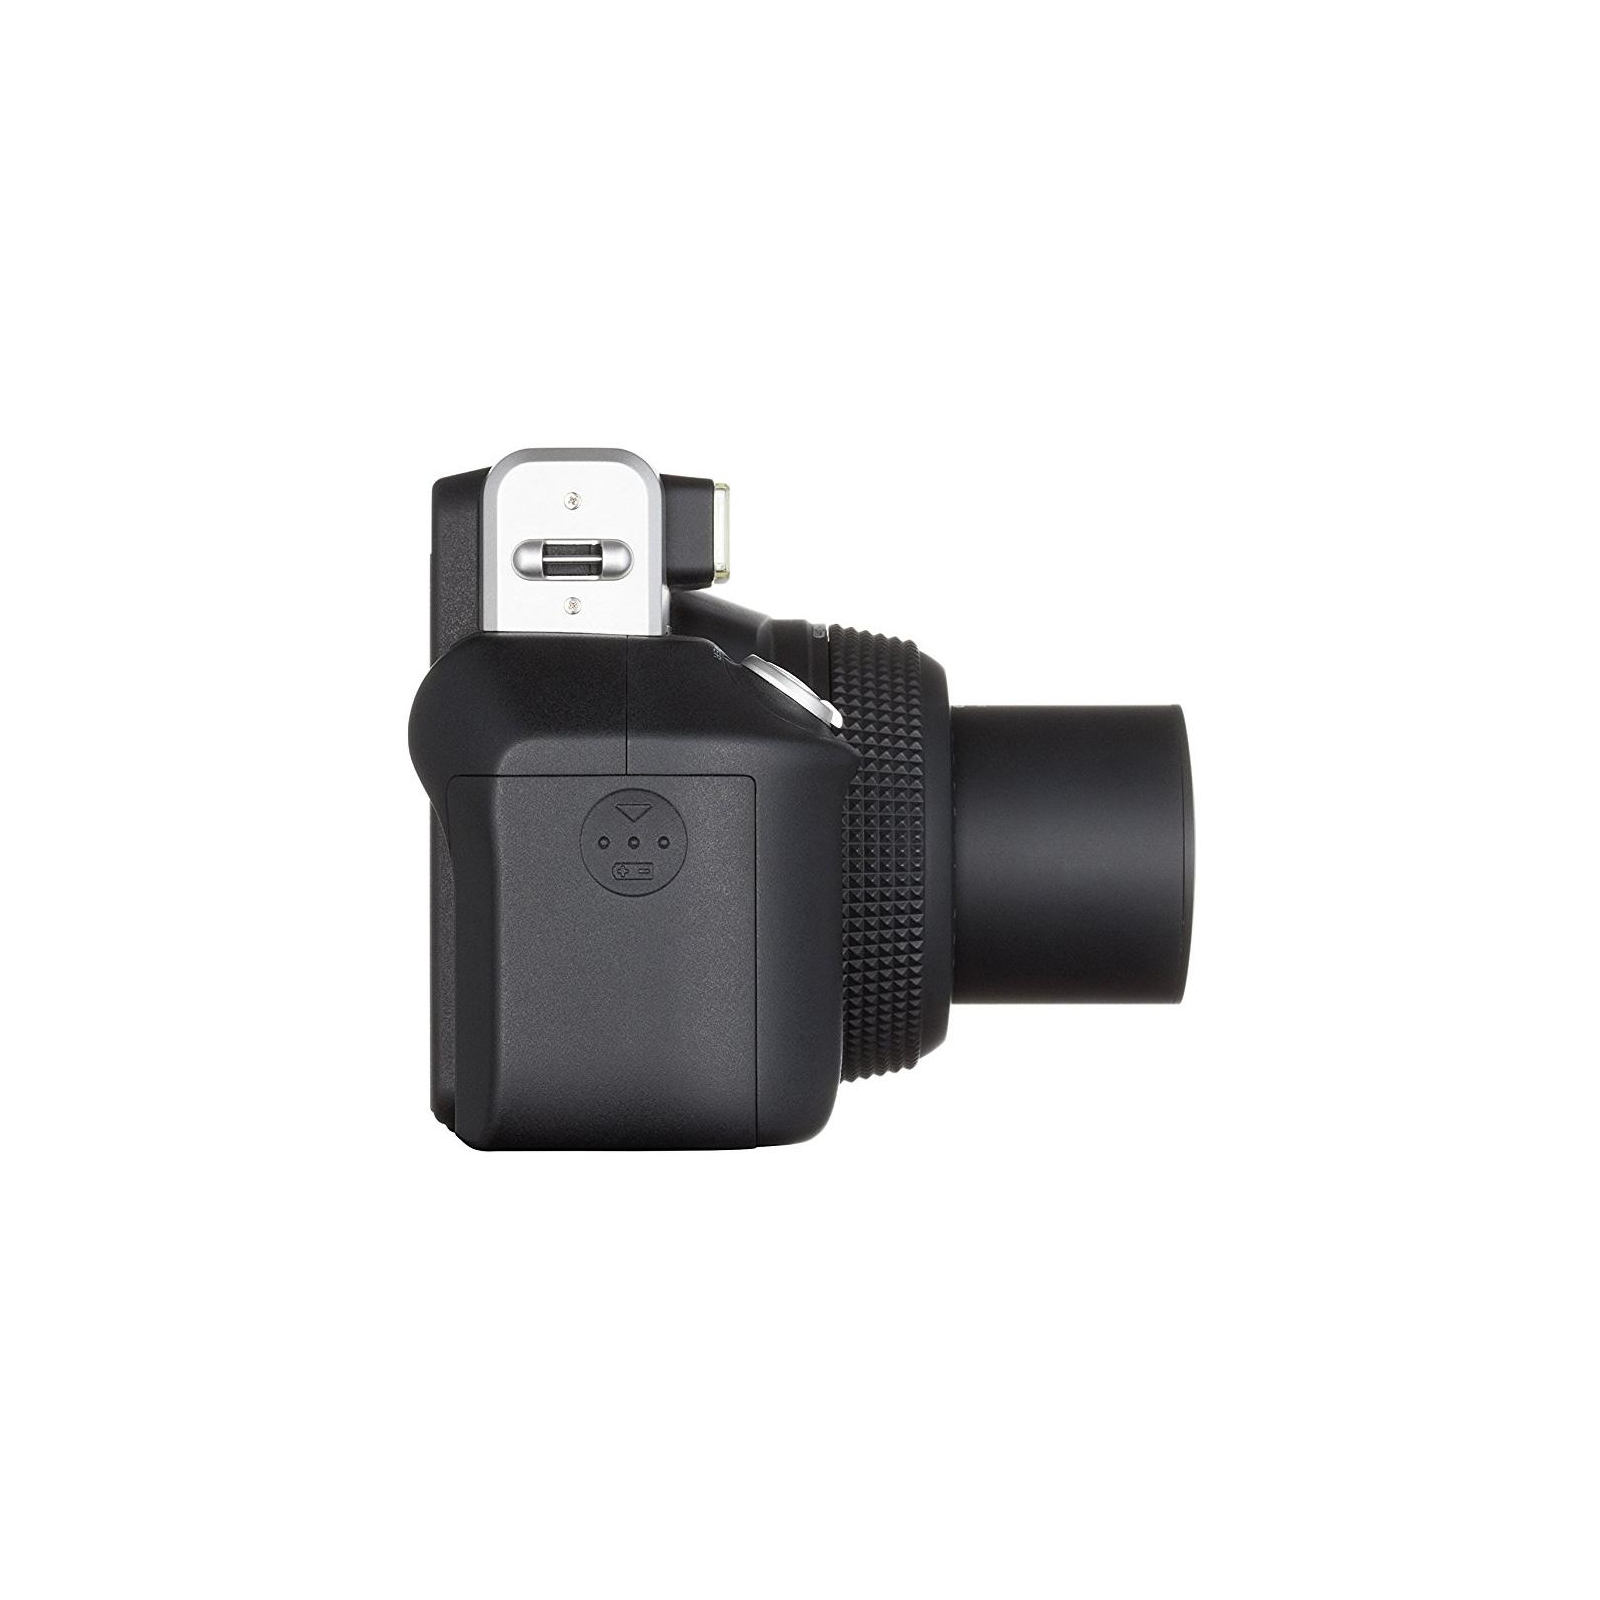 Камера моментальной печати Fujifilm Instax WIDE 300 Instant camera (16445795) изображение 9